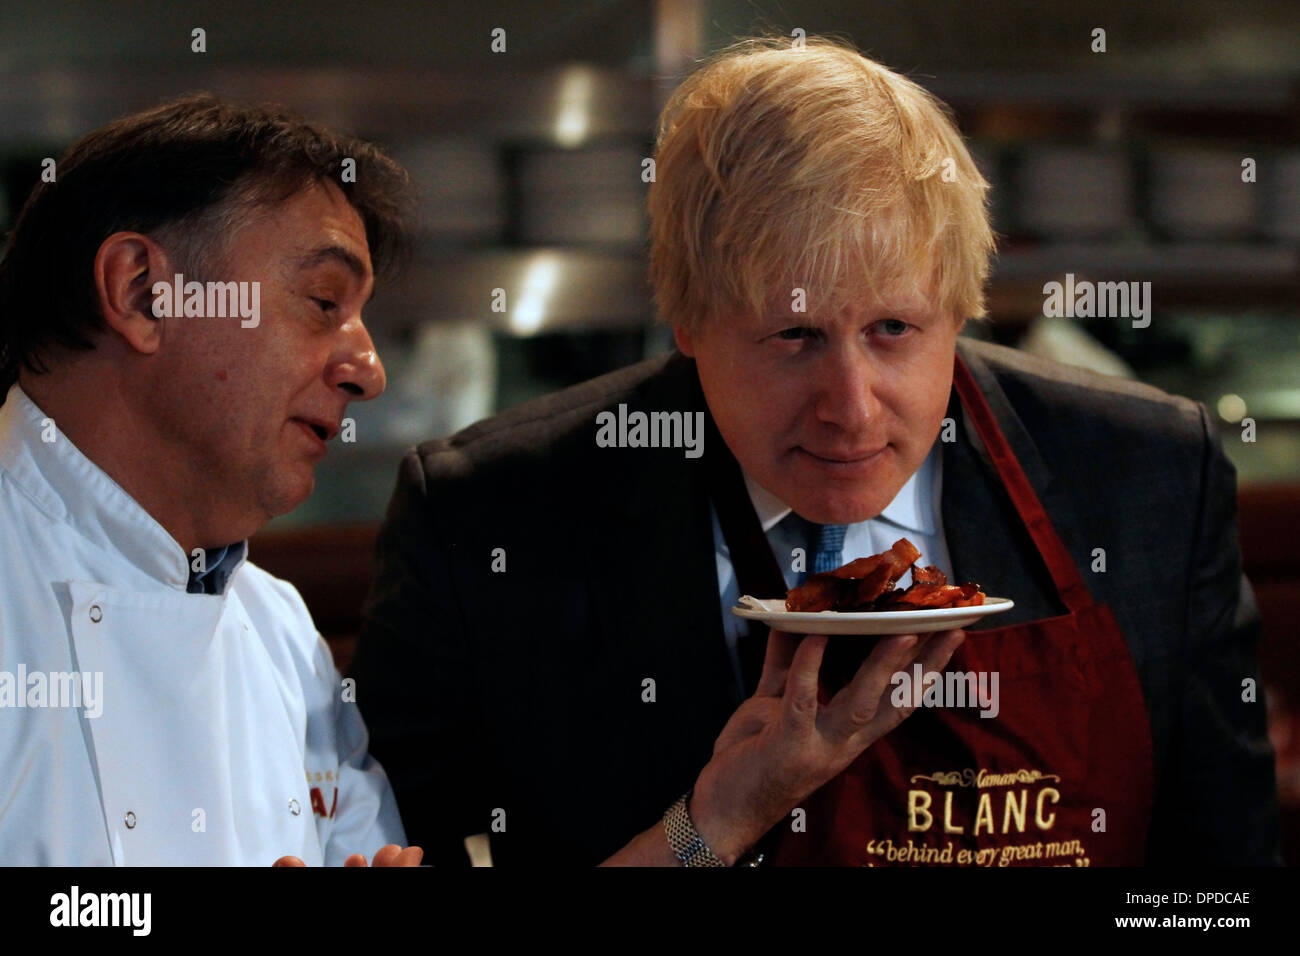 Photo pour le Maire de Londres, Boris Johnson, avec le chef Raymond Blanc Banque D'Images